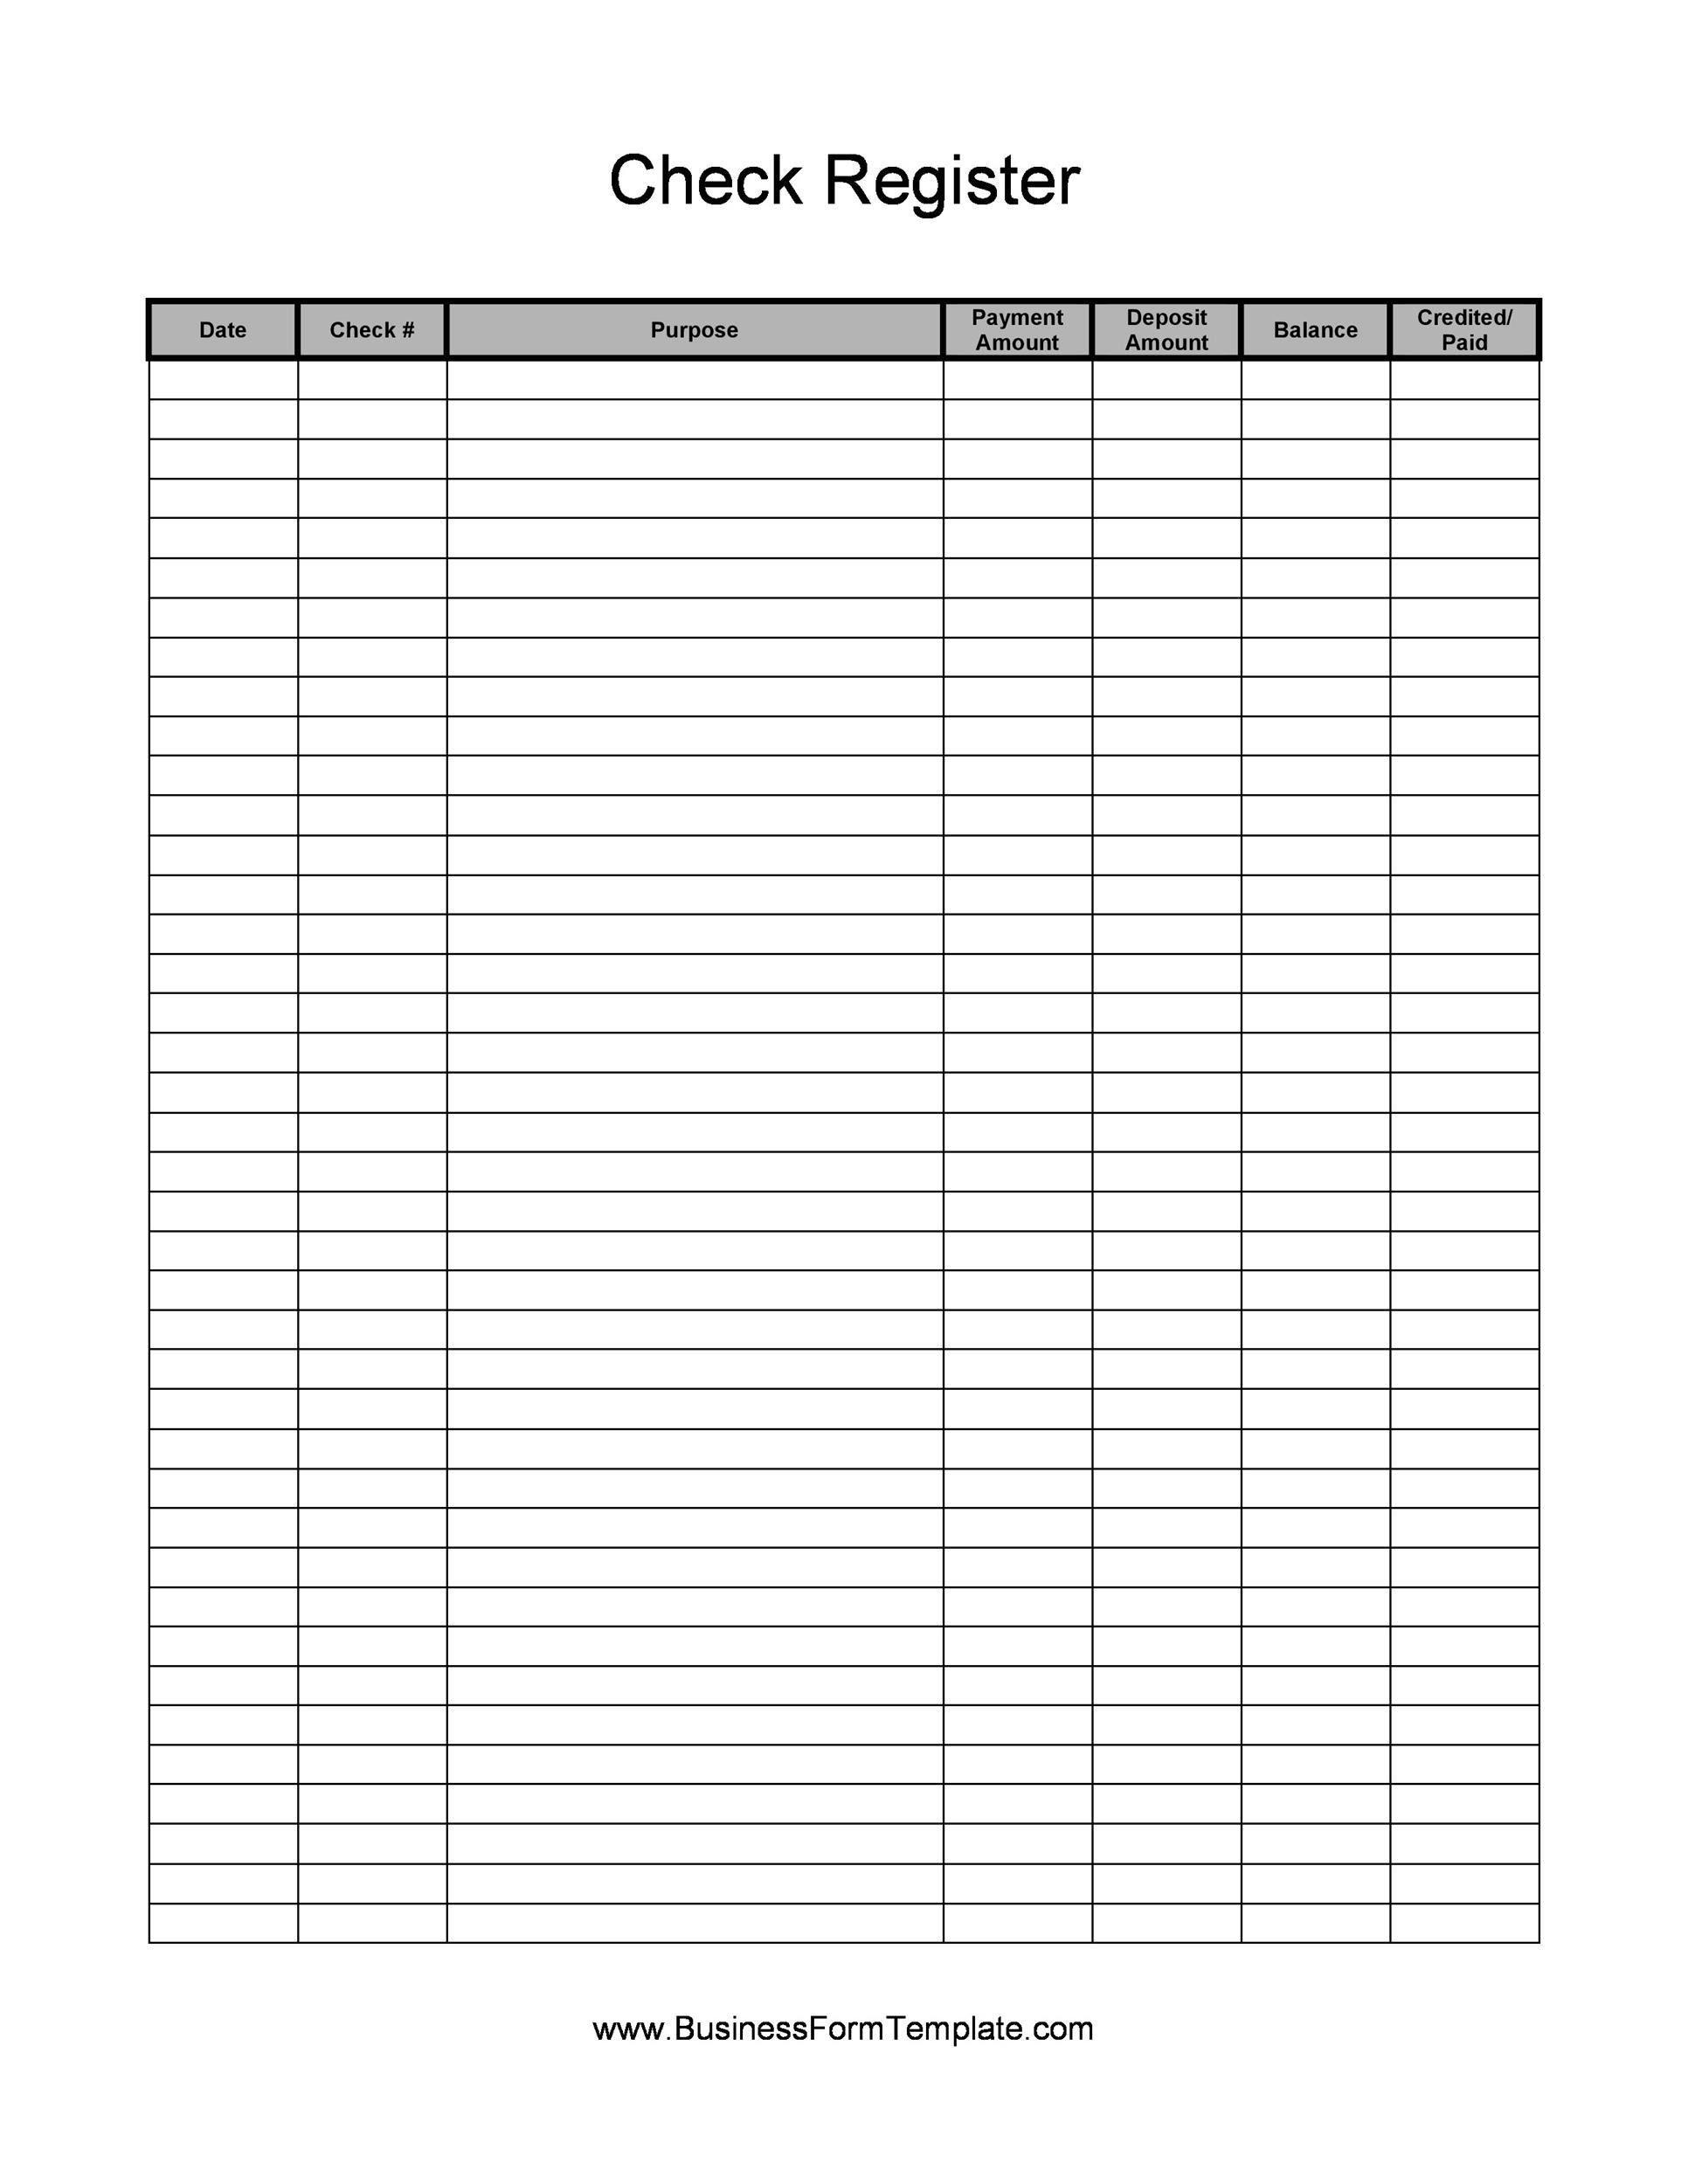 Excel Checkbook Register Budget Worksheet 39 Checkbook Register Templates [ Free Printable]